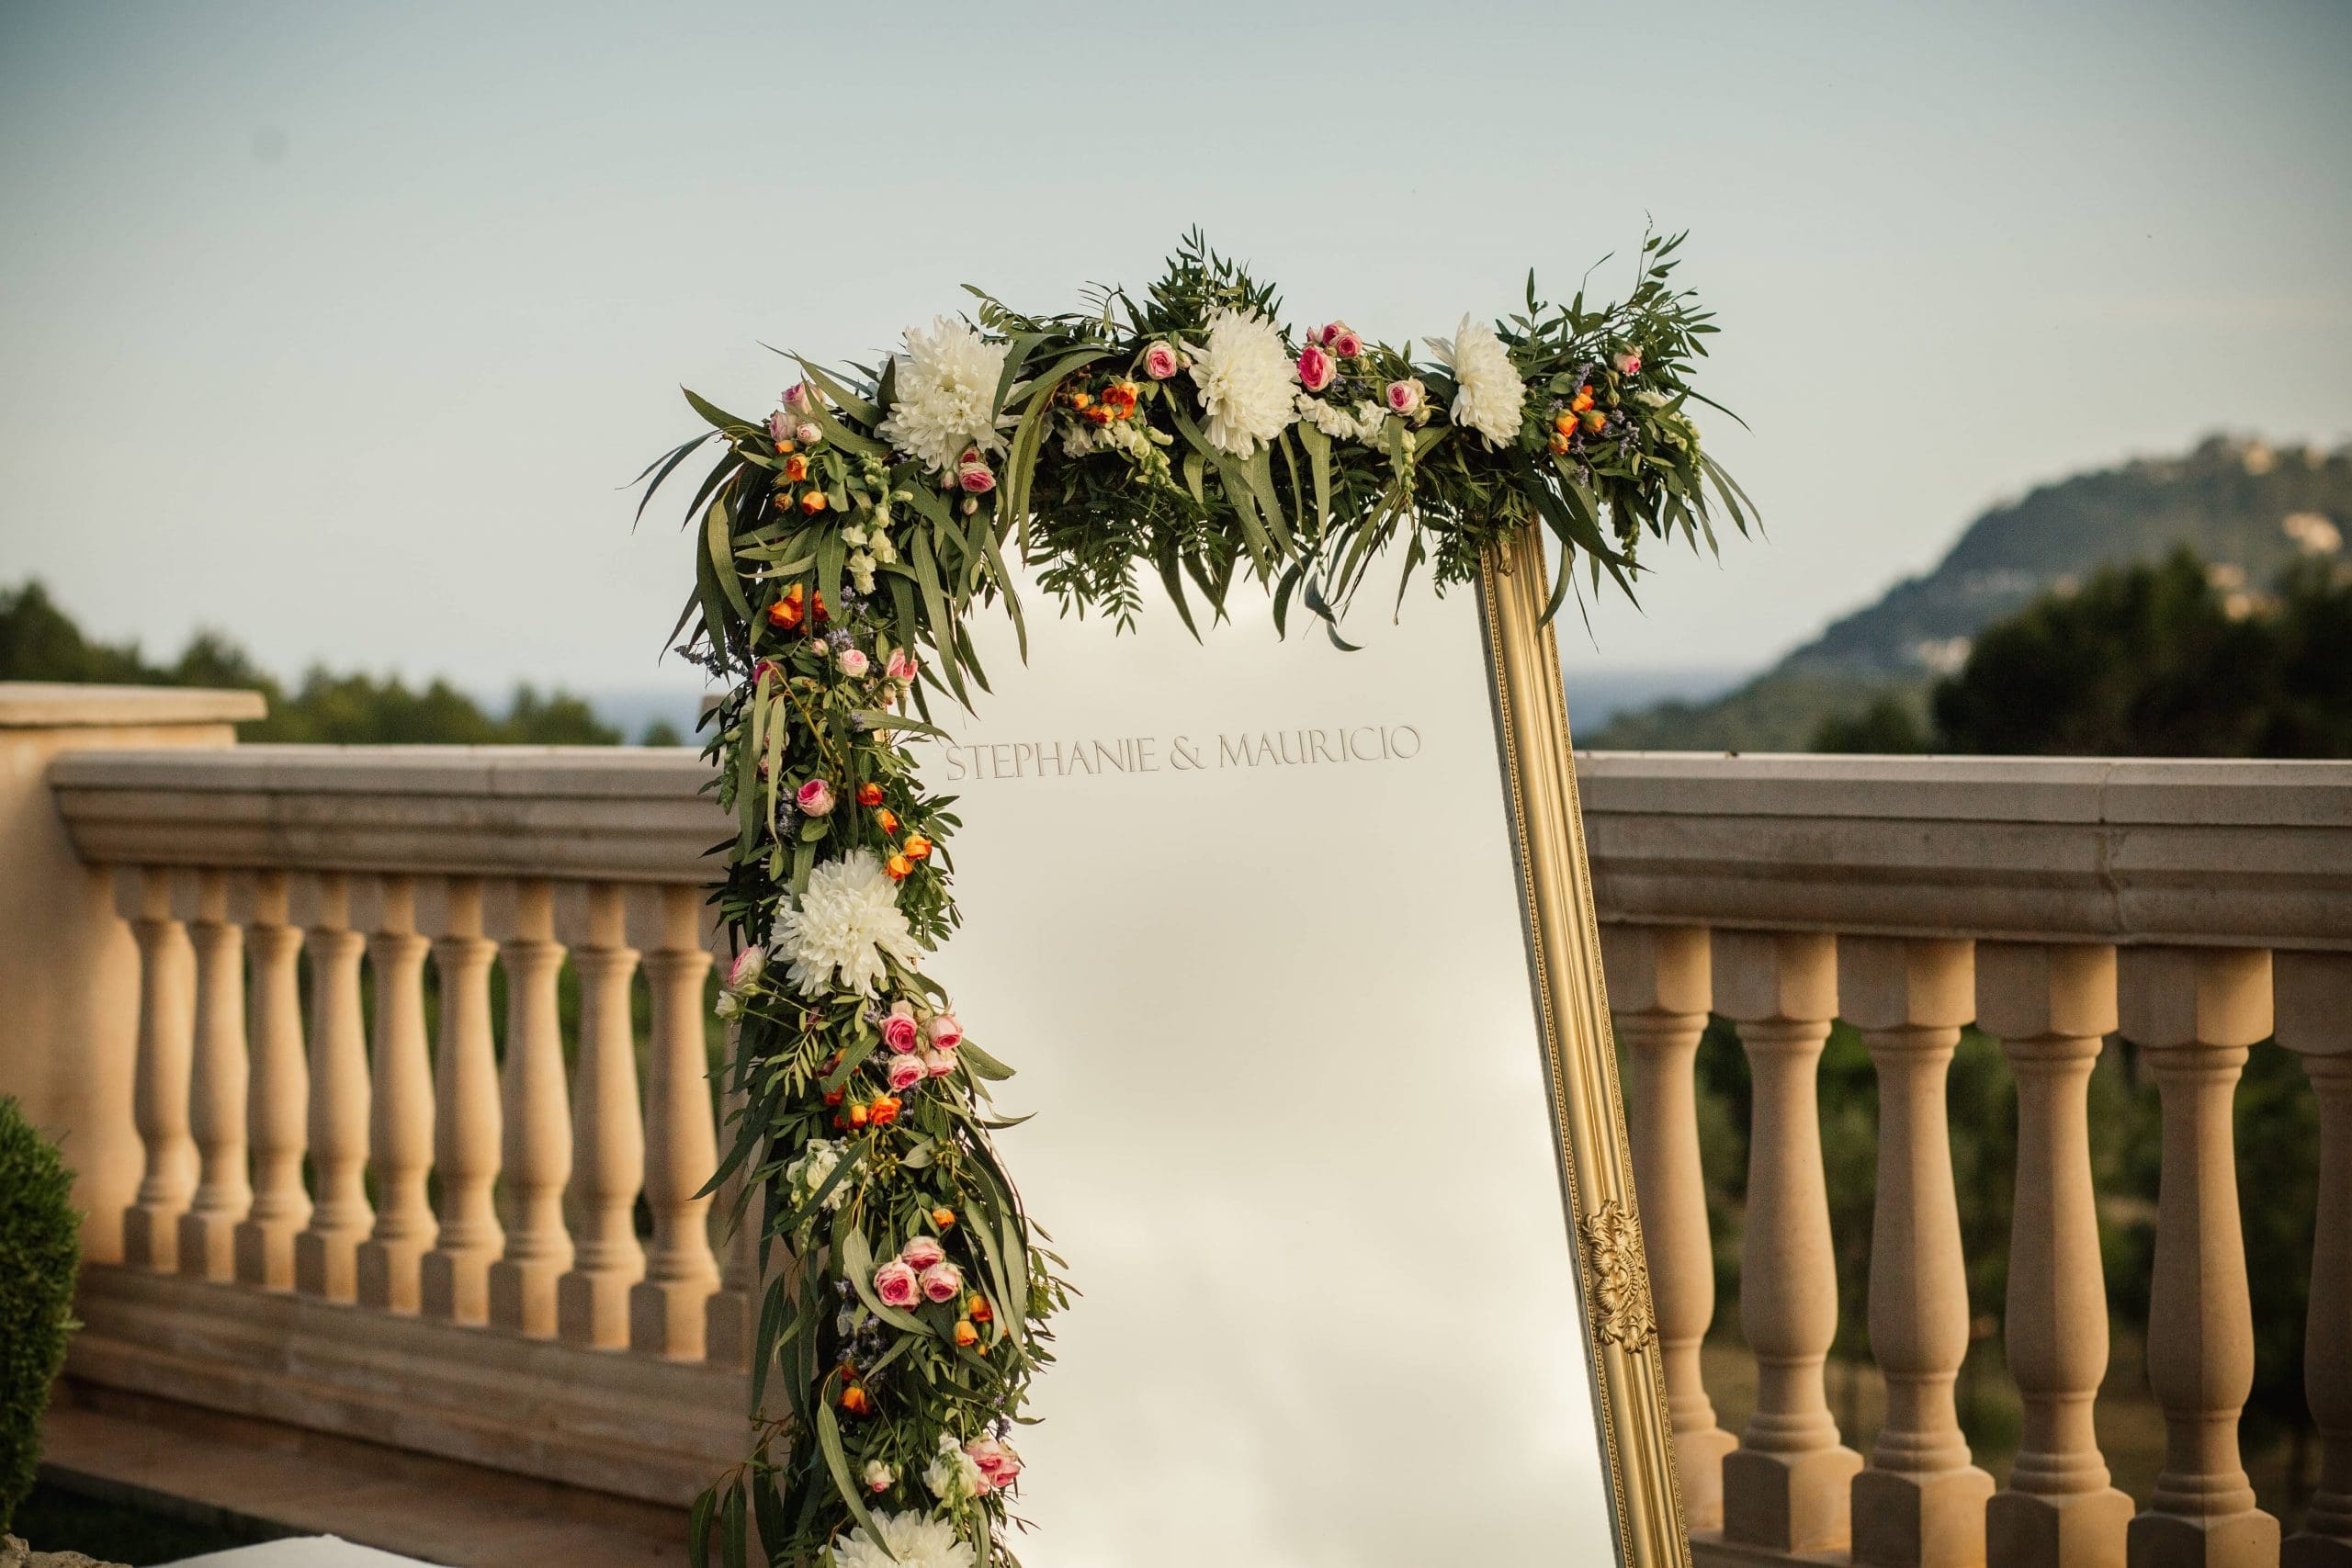 Espejo decorado con flores en su marco, con los nombres de los novios grabados, reflejando una boda en Mallorca.